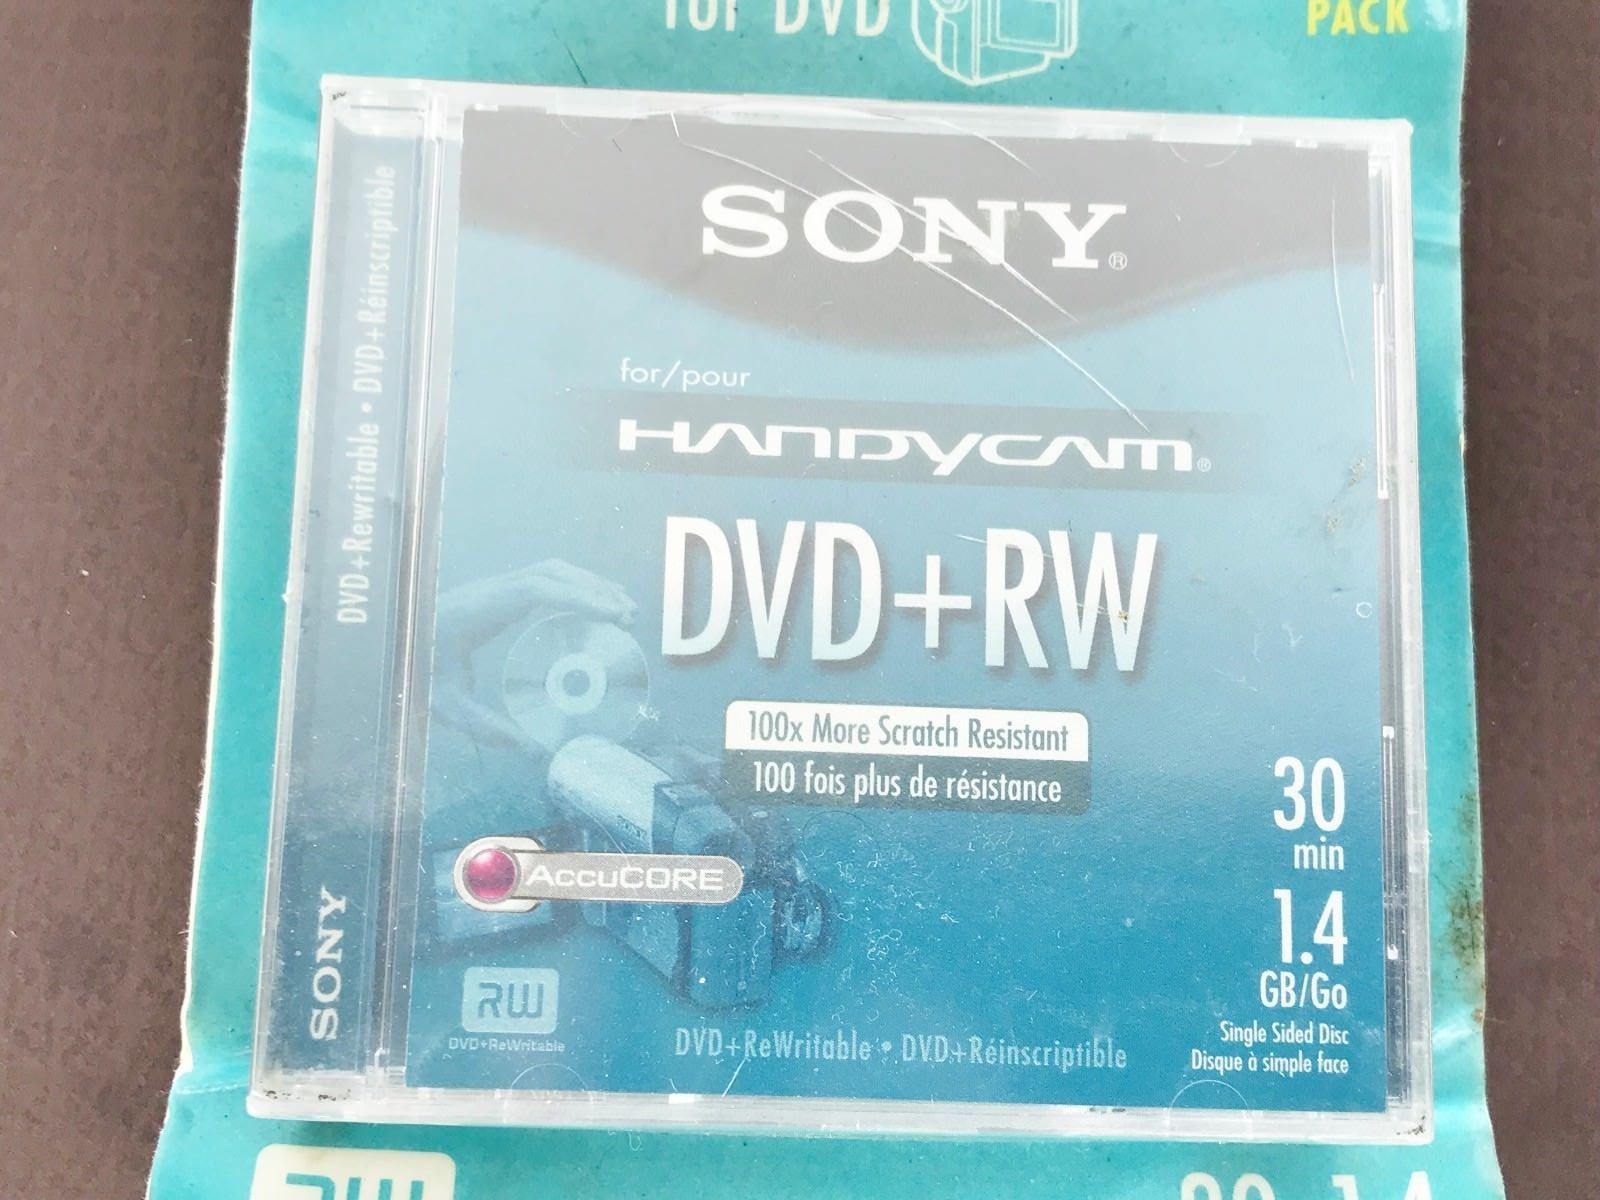 Sony Handycam Dvd Rw Discs - A B C Learn